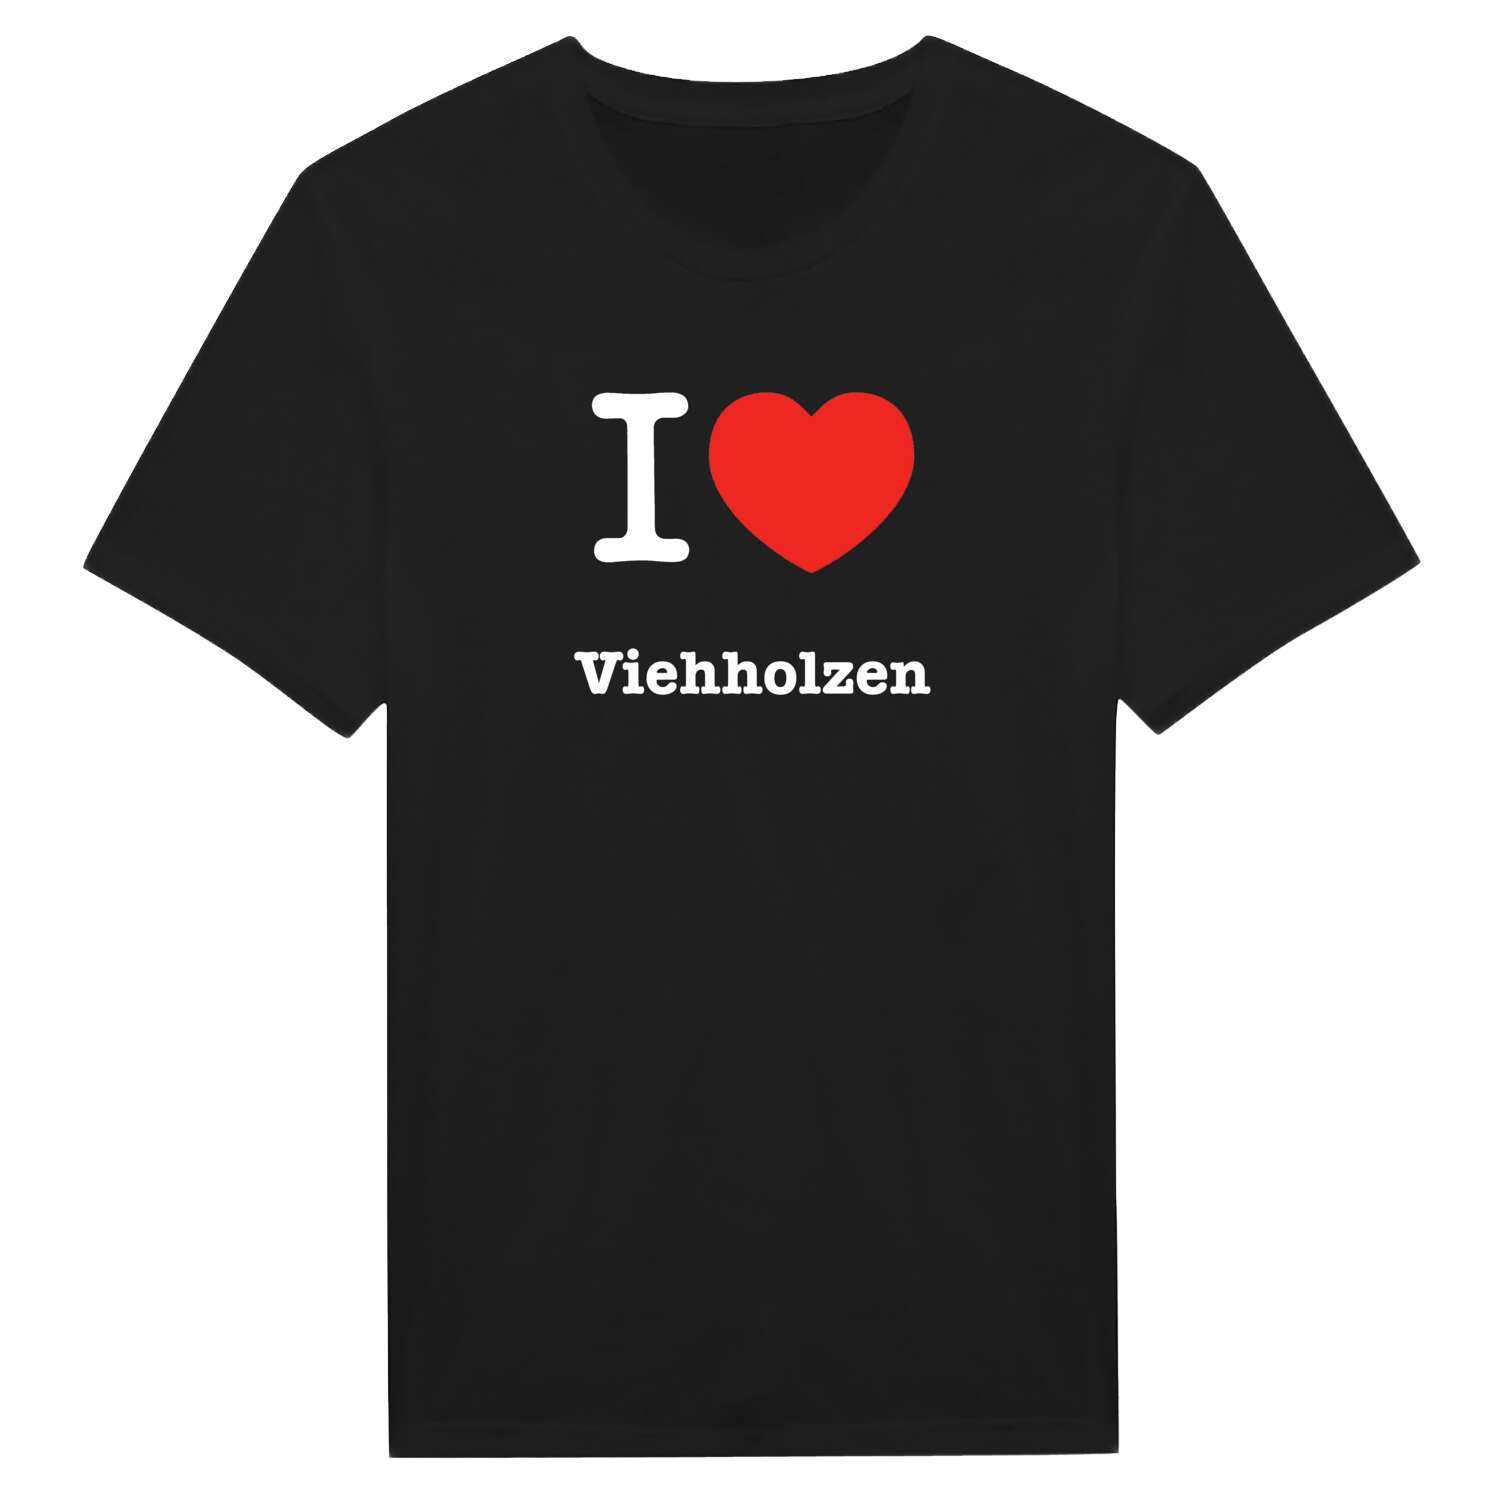 Viehholzen T-Shirt »I love«